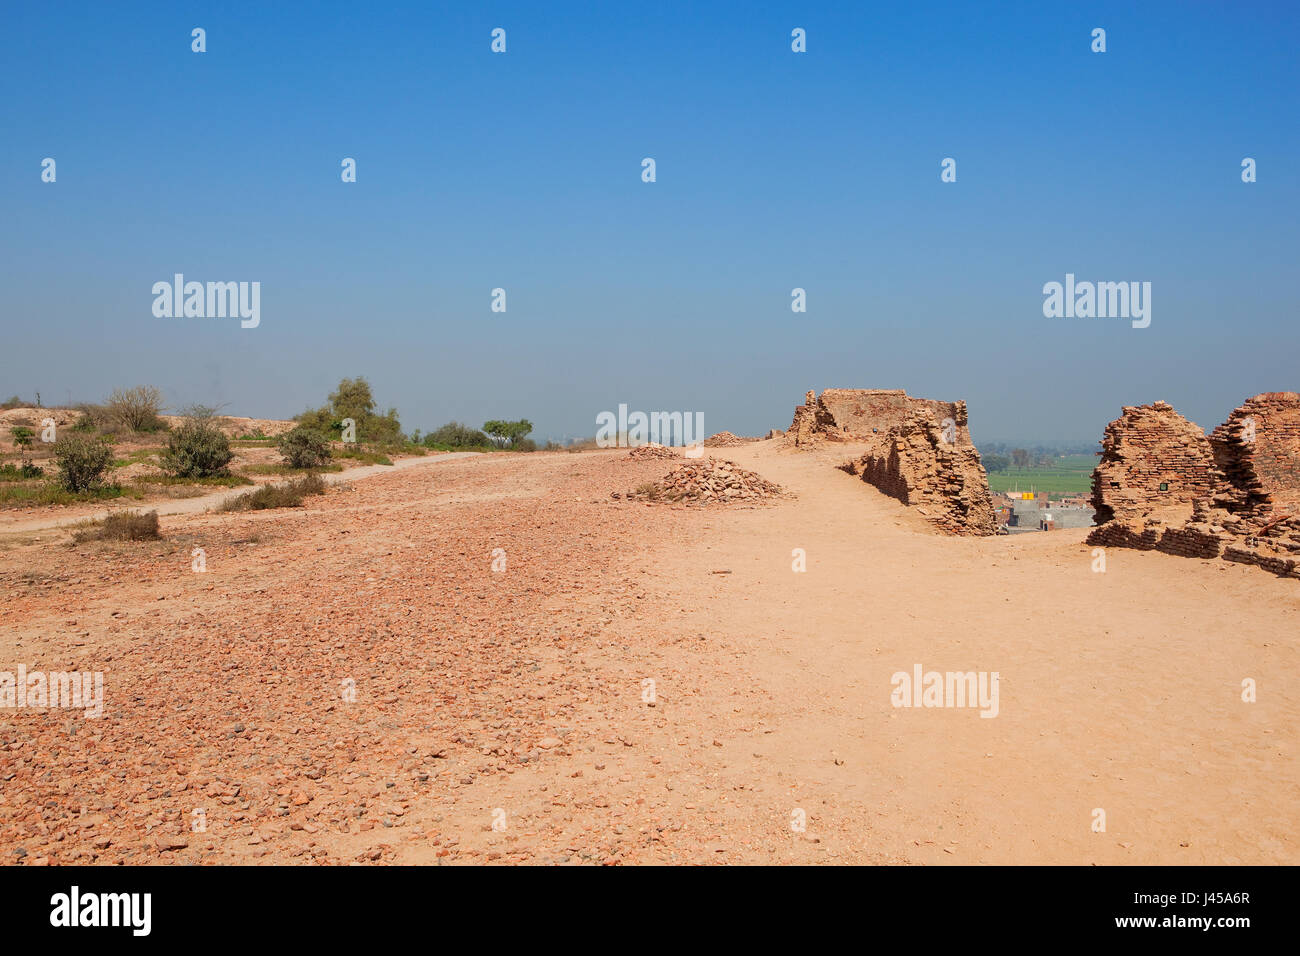 Restaurierungsarbeiten an der Spitze der Bhatner Festung Rajasthan Indien mit Akazien und Ziegel Bauschutt und einen Blick auf ferne Landschaft unter blauem Himmel in s Stockfoto